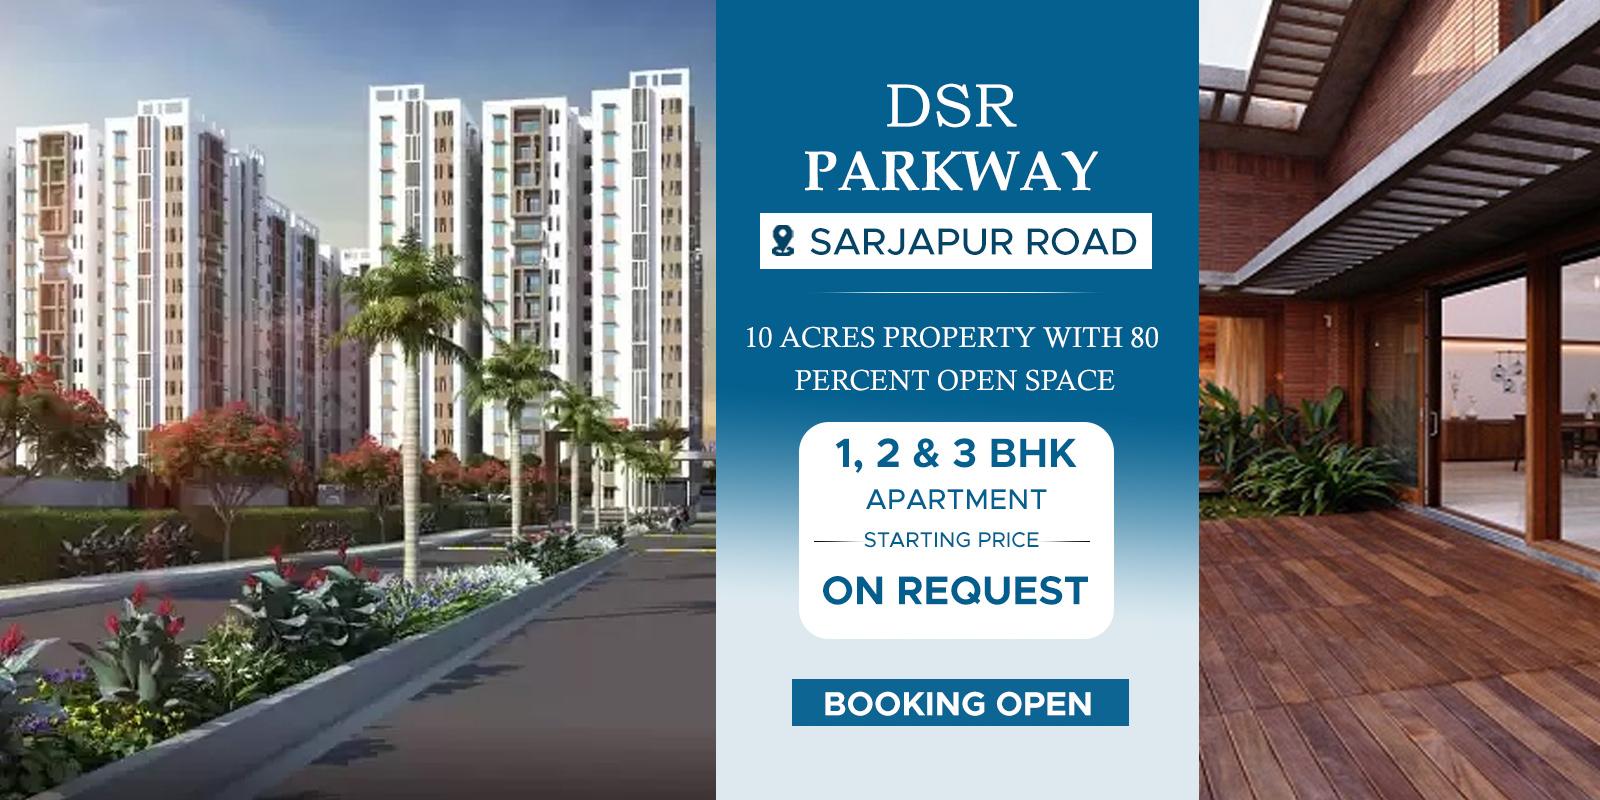 DSR Parkway Sarjapur Road-dsr-parkway-sarjapur-road-banner-2.jpg